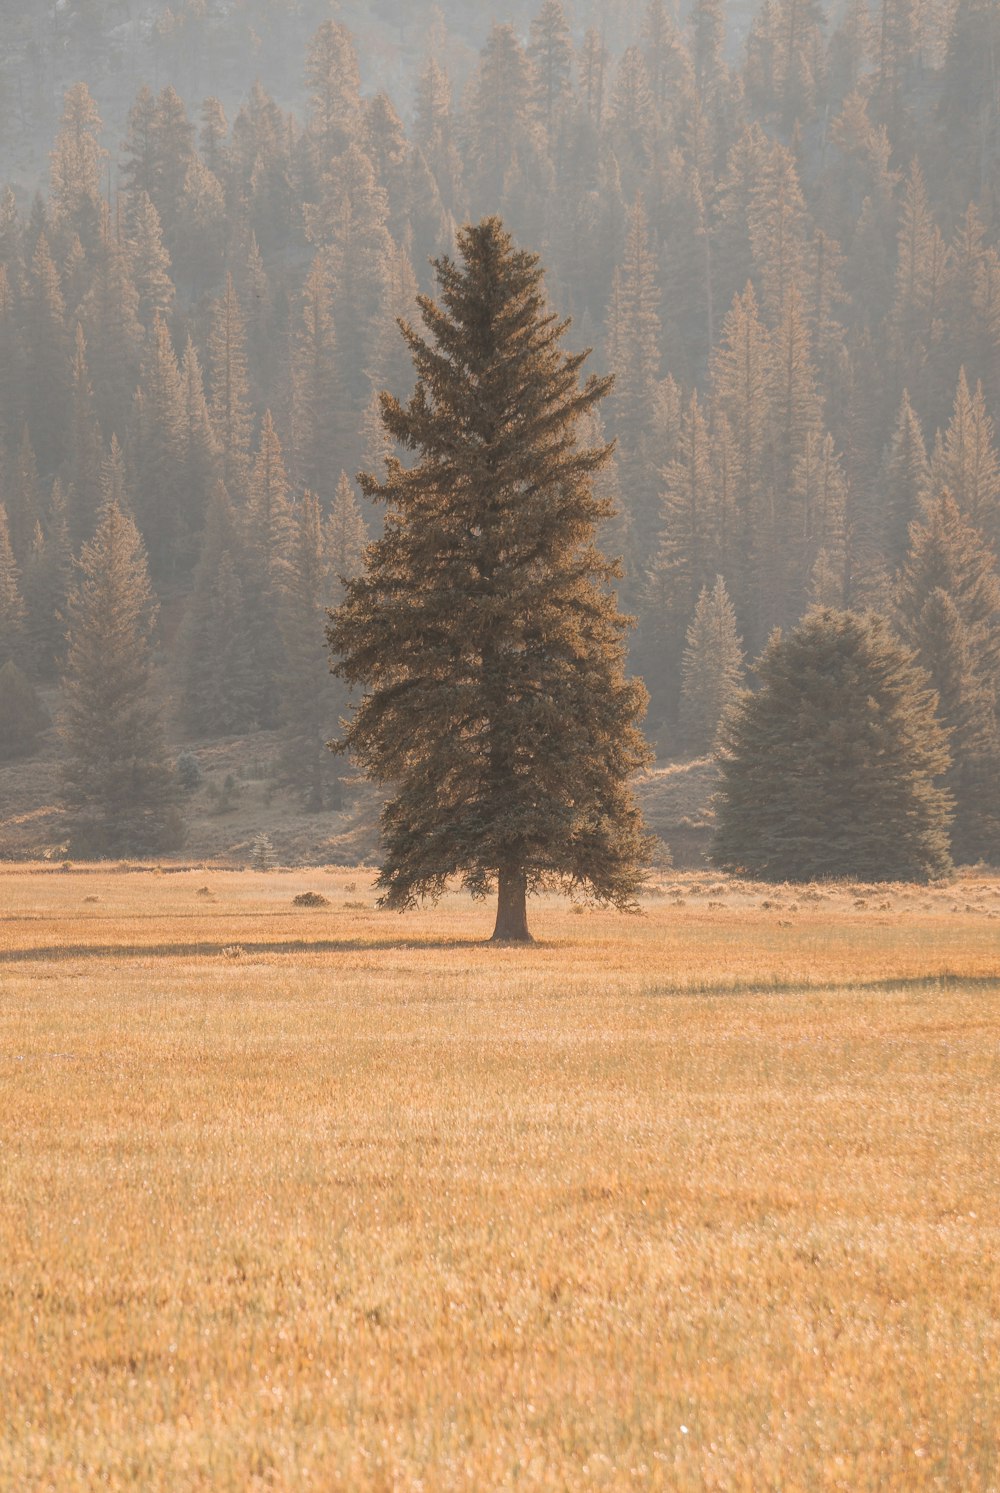 Un albero solitario si erge da solo in un campo